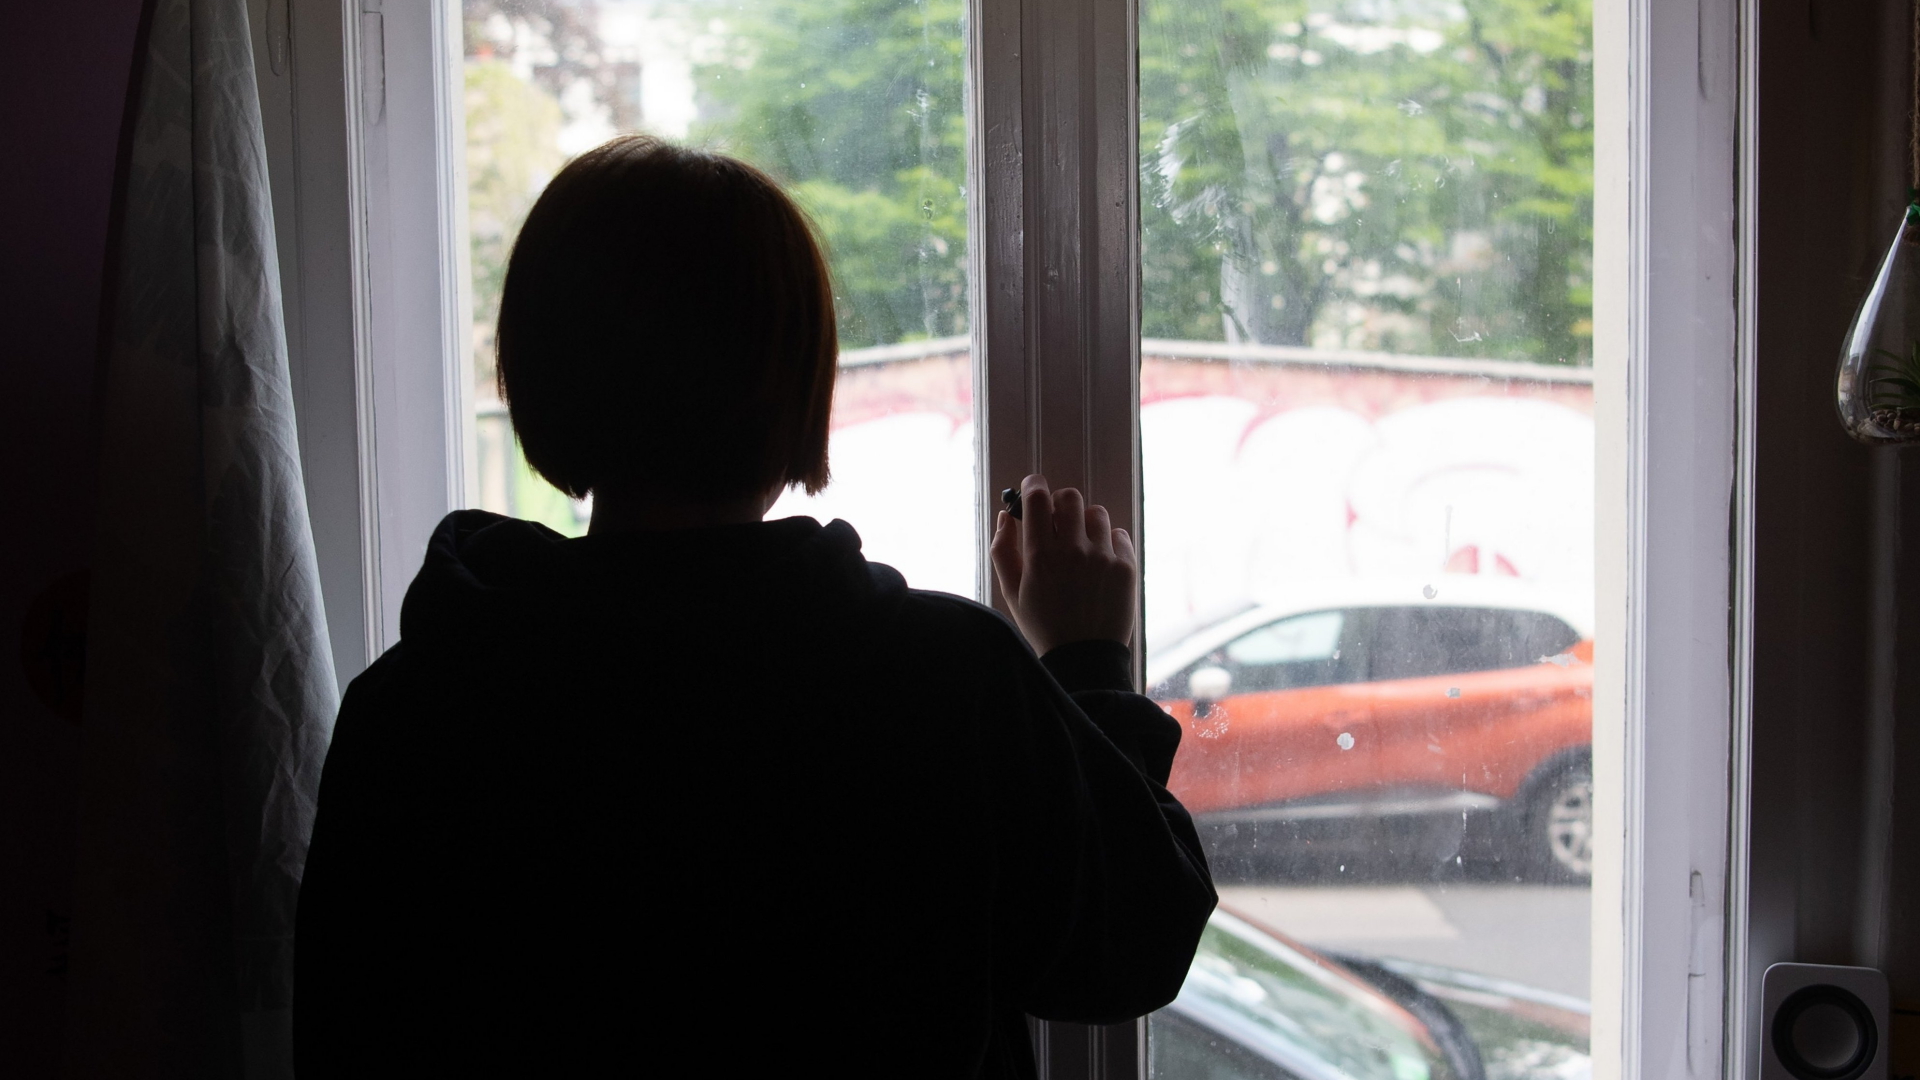  Eine Jugendliche blickt aus einem Fenster. | dpa